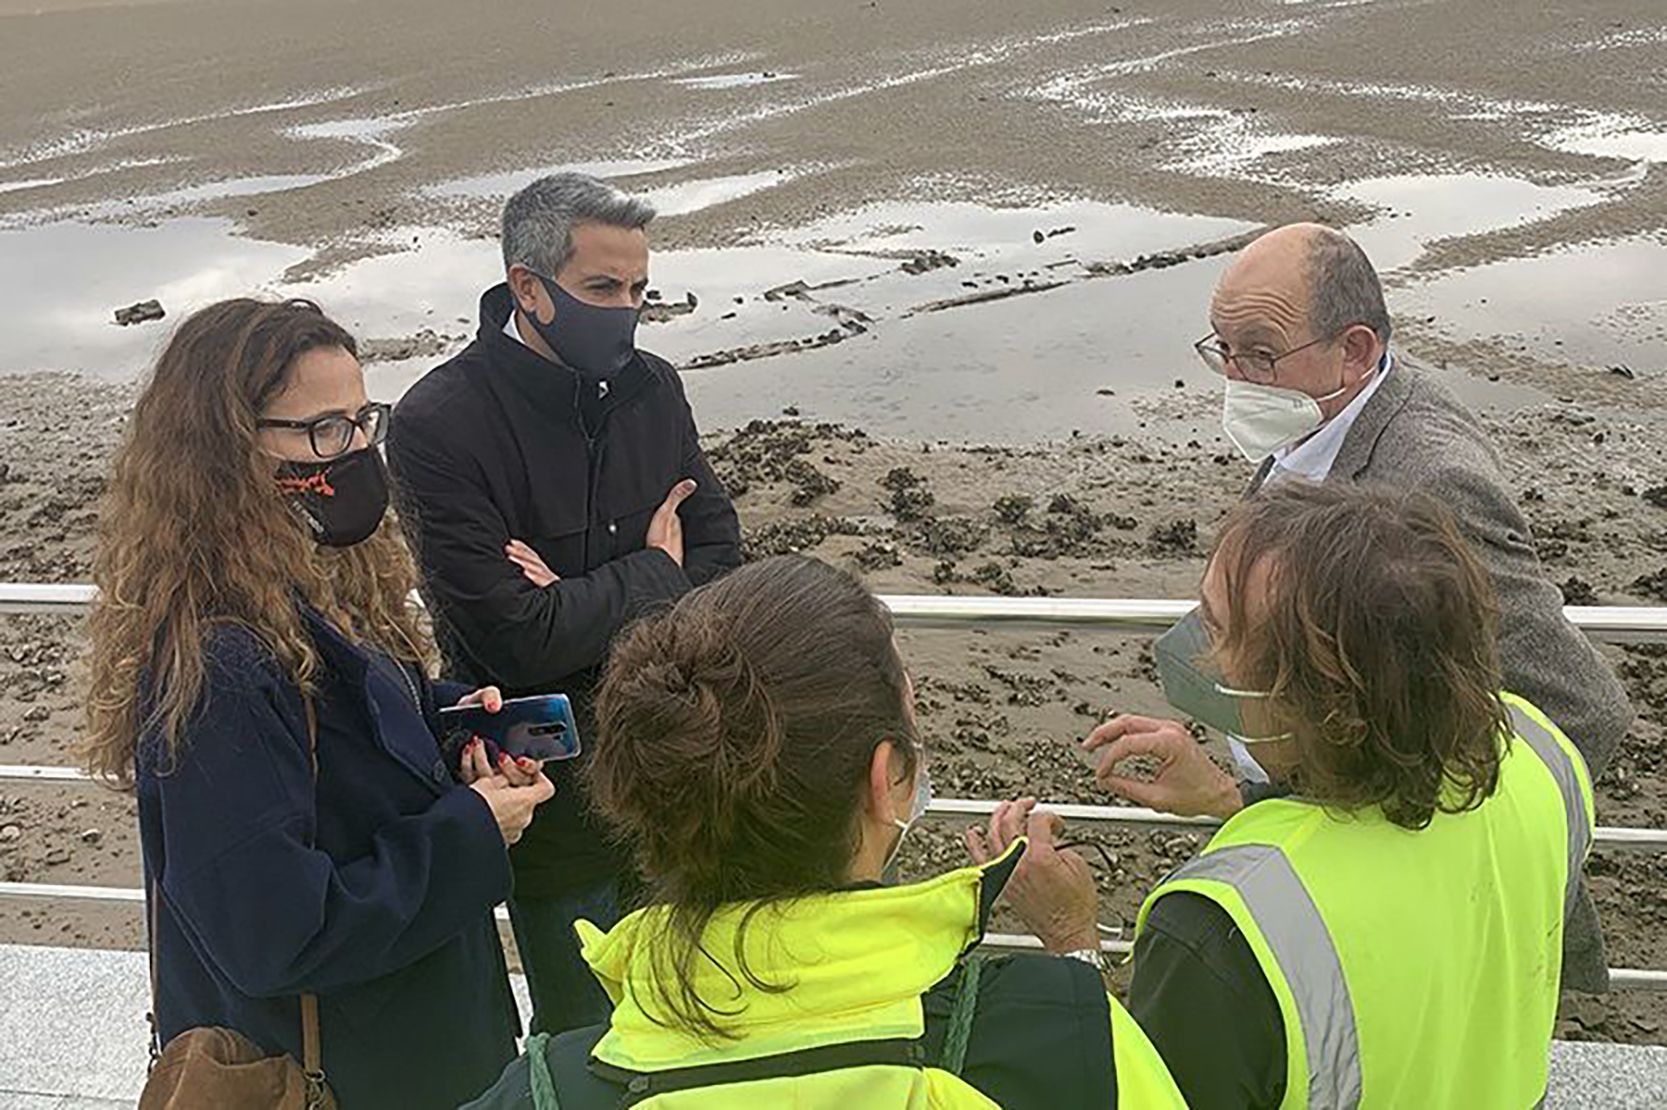 Las mareas sacan a la superficie un pecio que podría llevar más de 100 años hundido en Cantabria